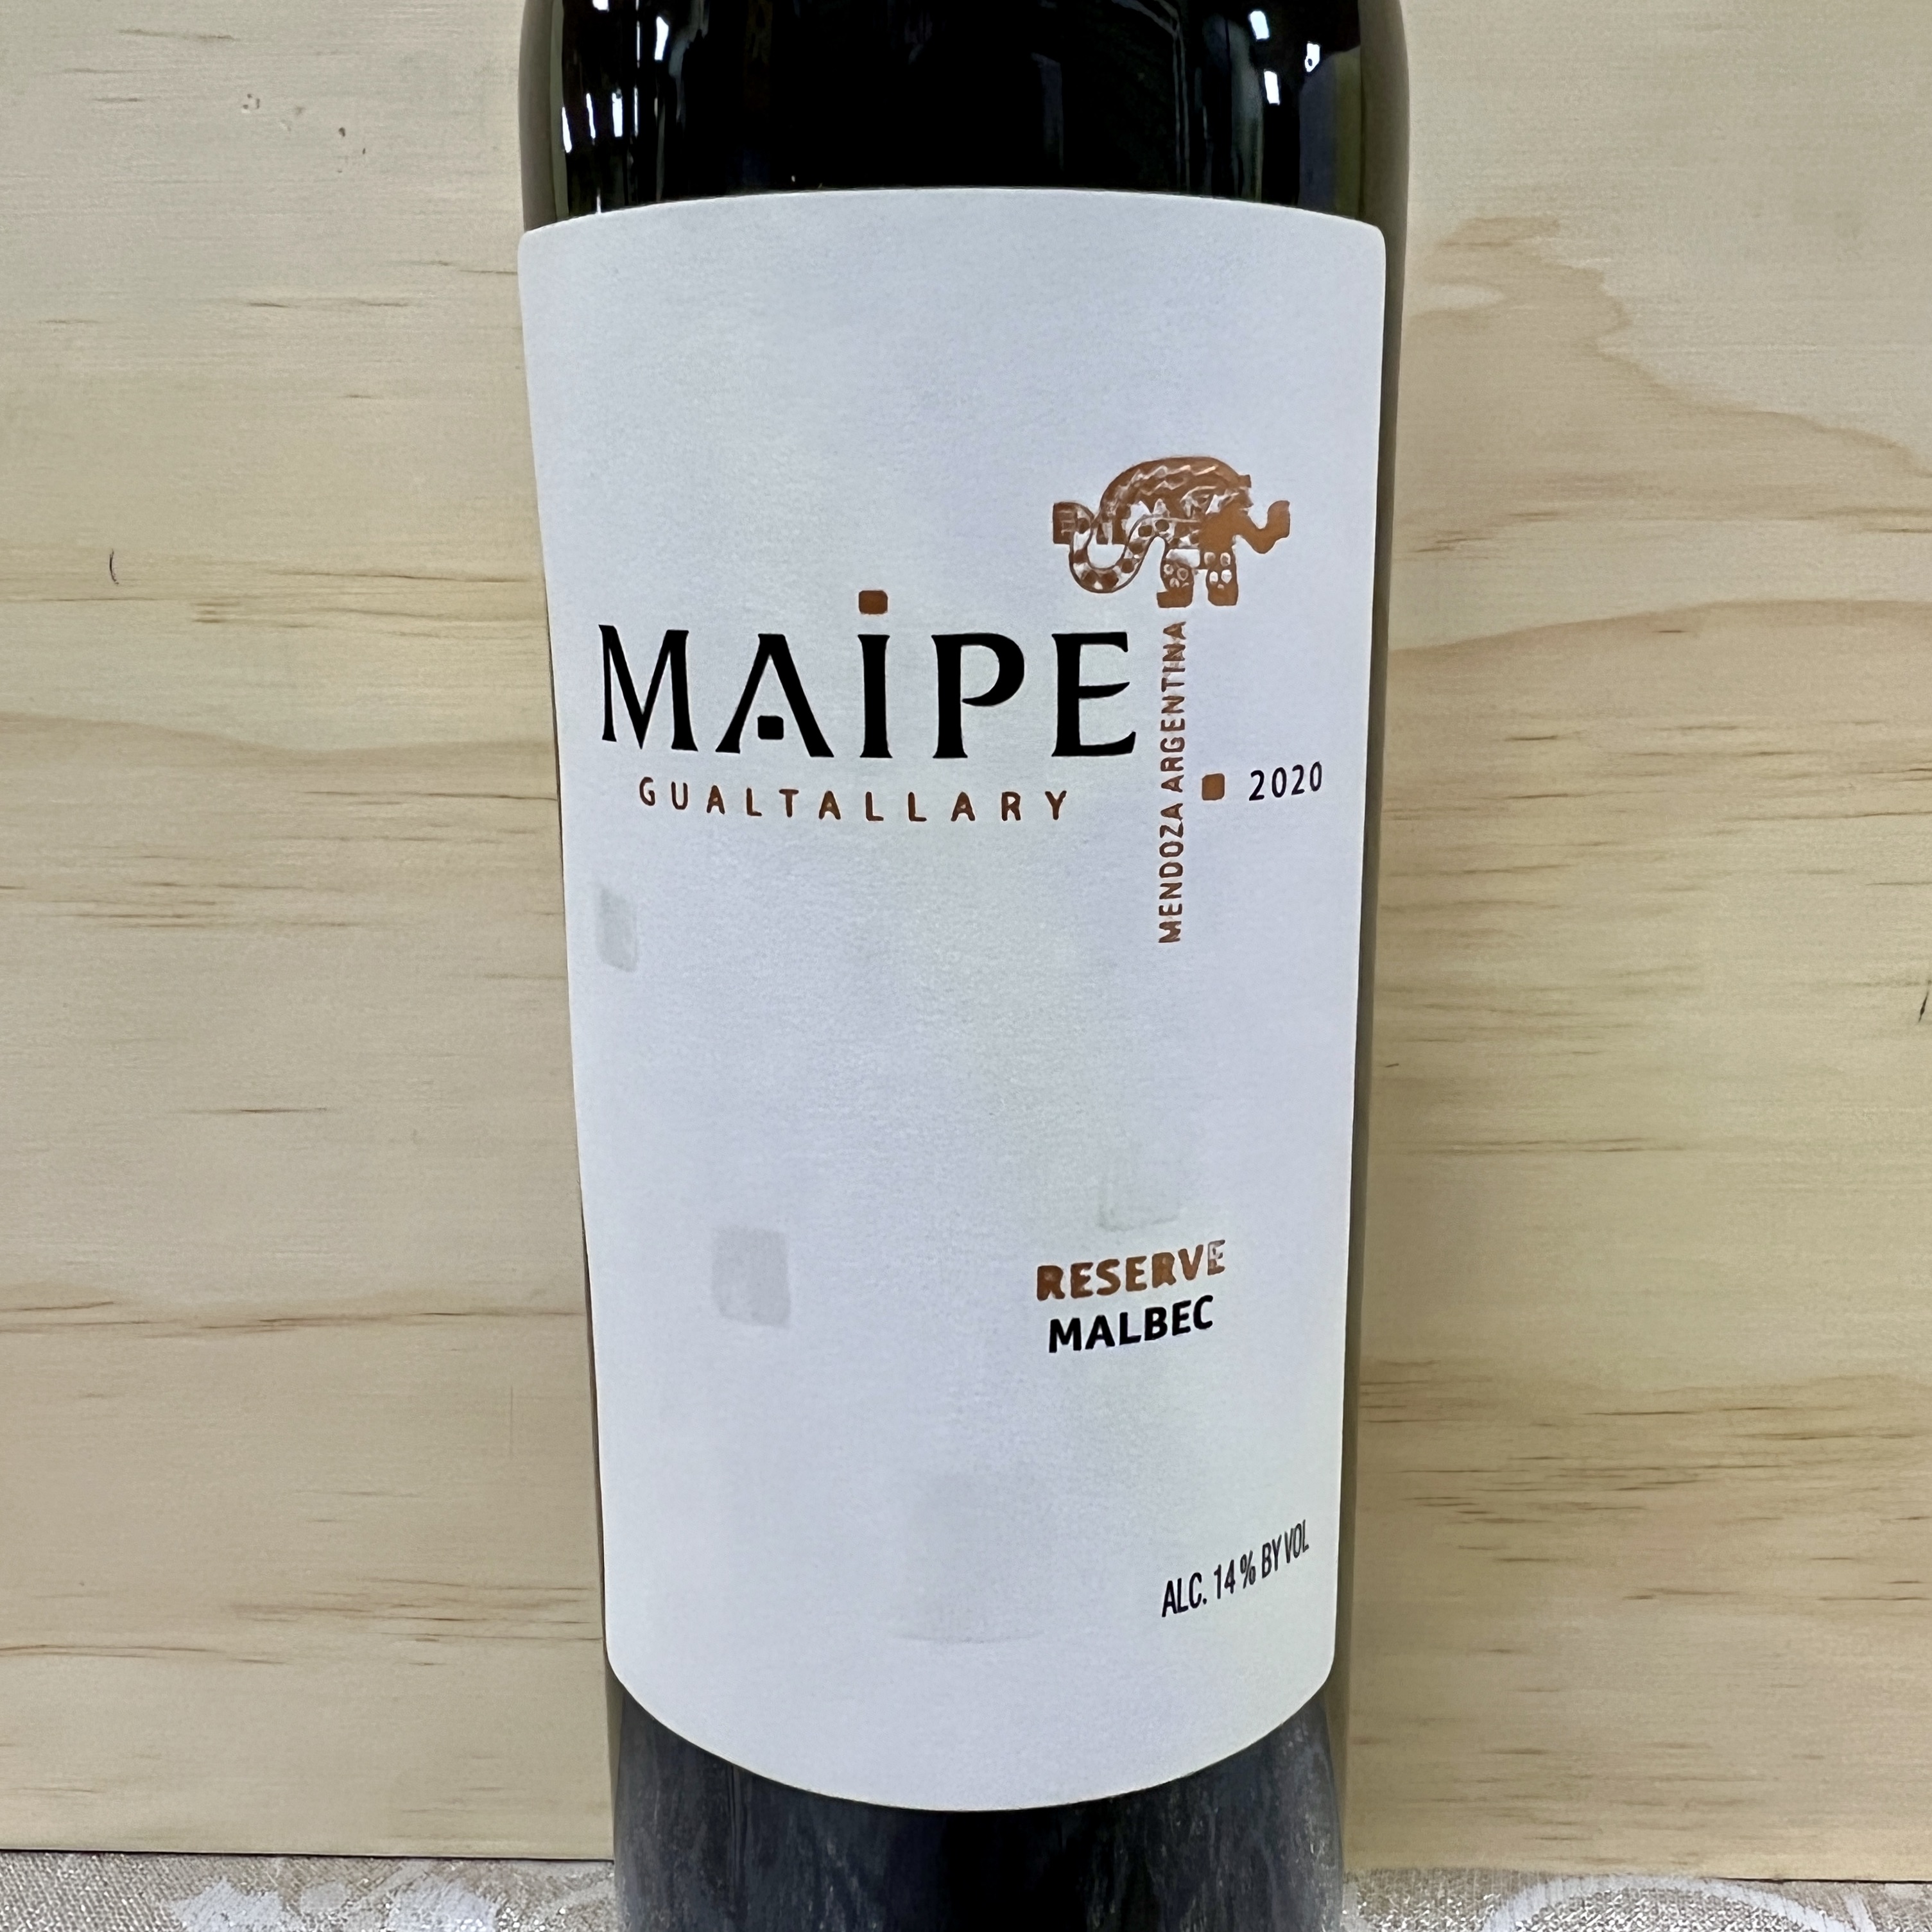 Maipe Reserve Malbec Gualtallary Mendoza 2020